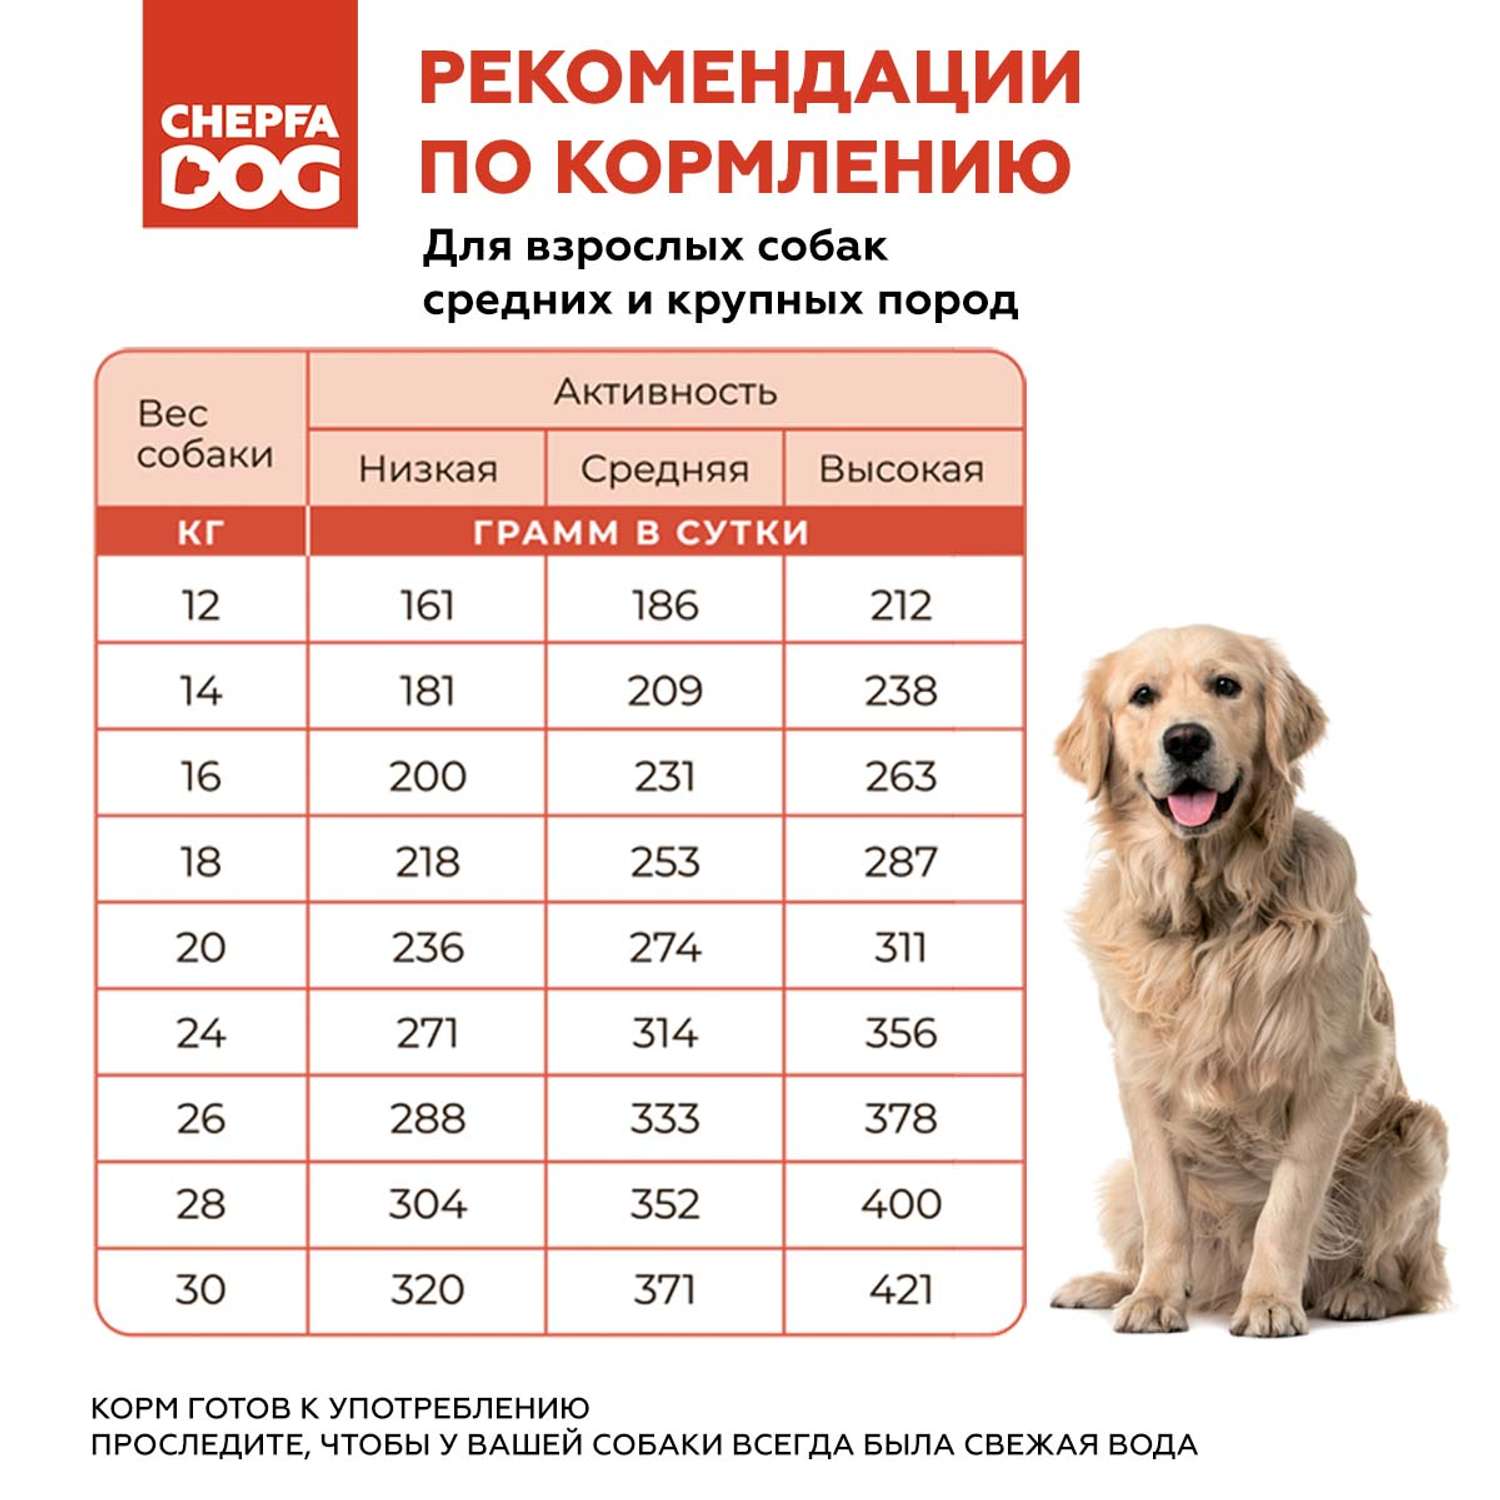 Сухой корм для собак Chepfa Dog Полнорационный ягненок и говядина 2.2 кг для взрослых собак средних и крупных пород - фото 6